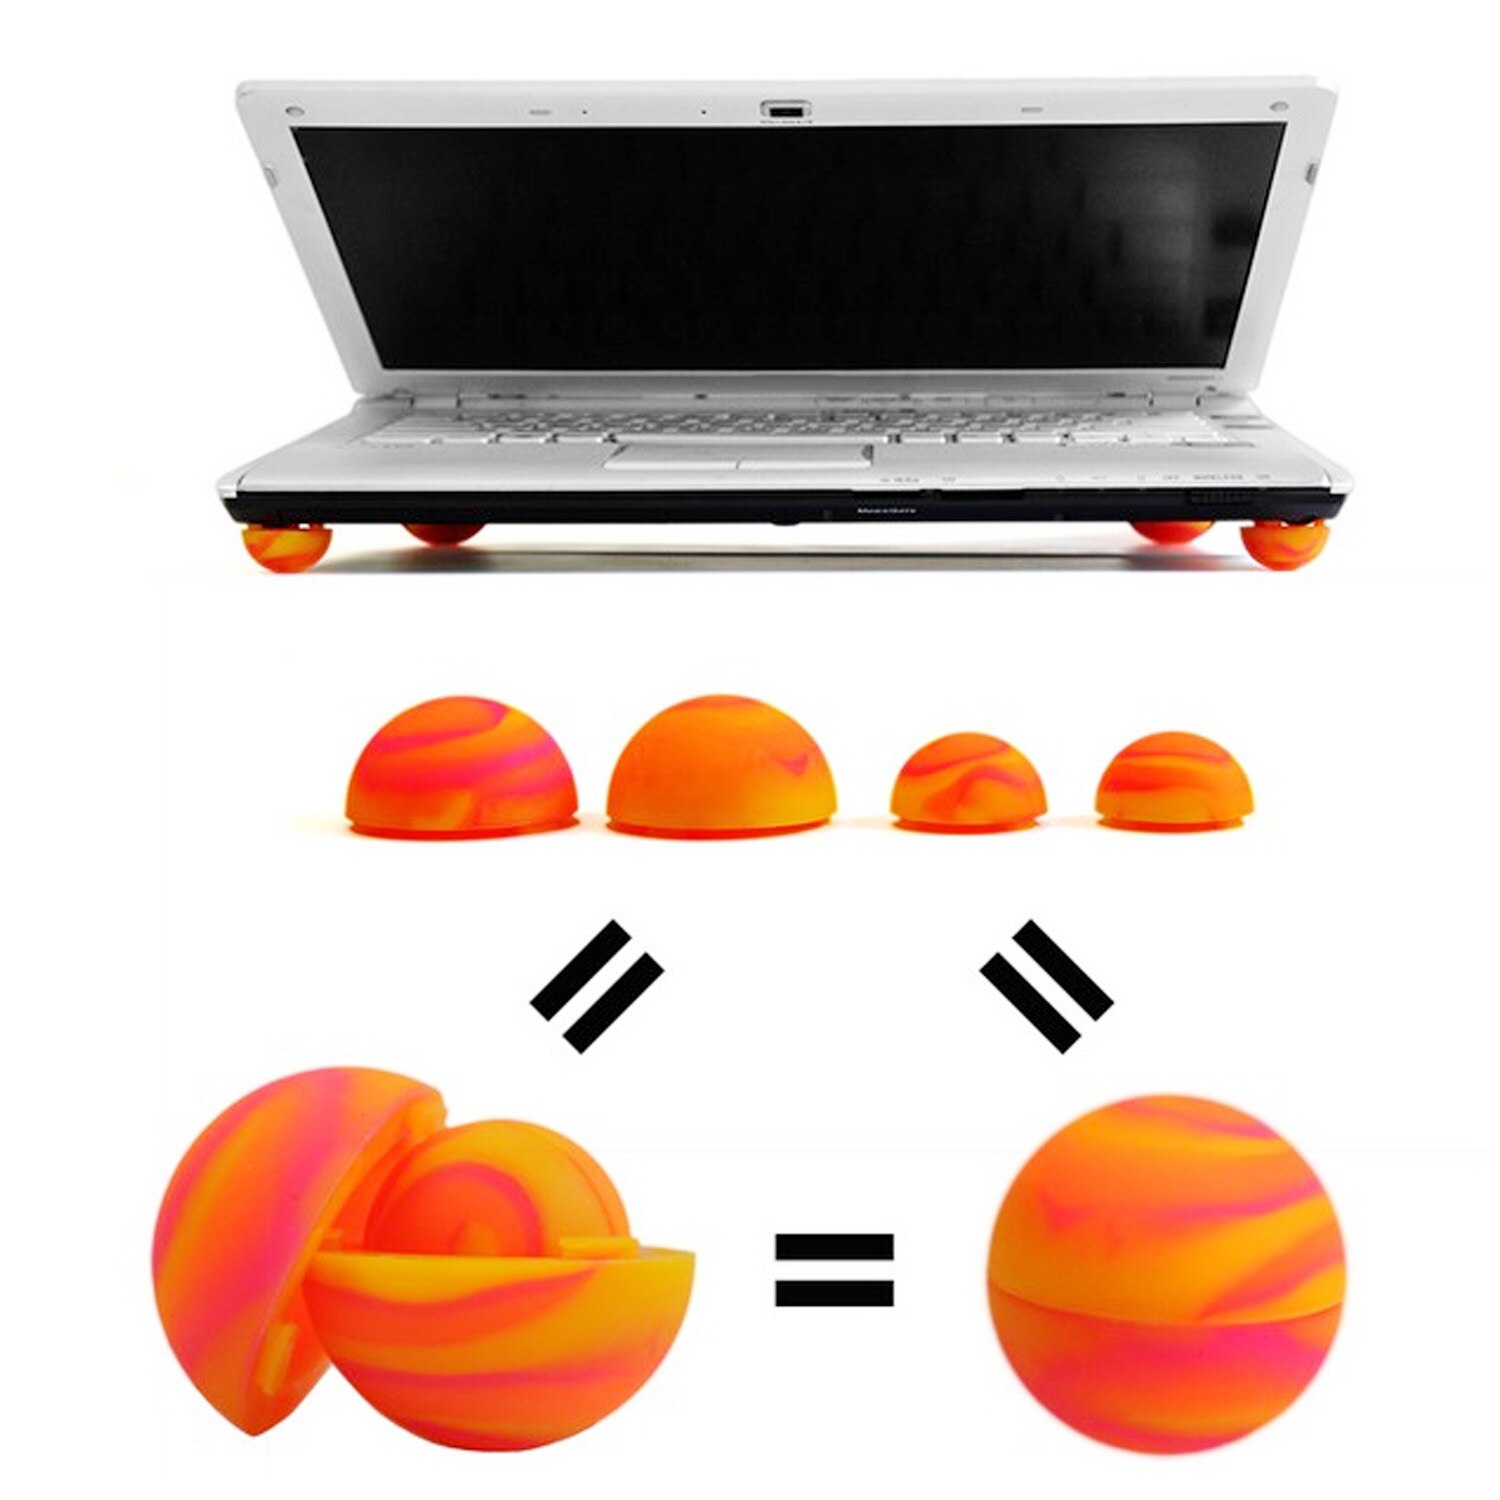 Besegad 4 Stuks Universele Praktische Laptop Cooling Pads Notebook Skidproof Voeten Warmte Reductie Cooler Pads Stand Houder Voor Macbook